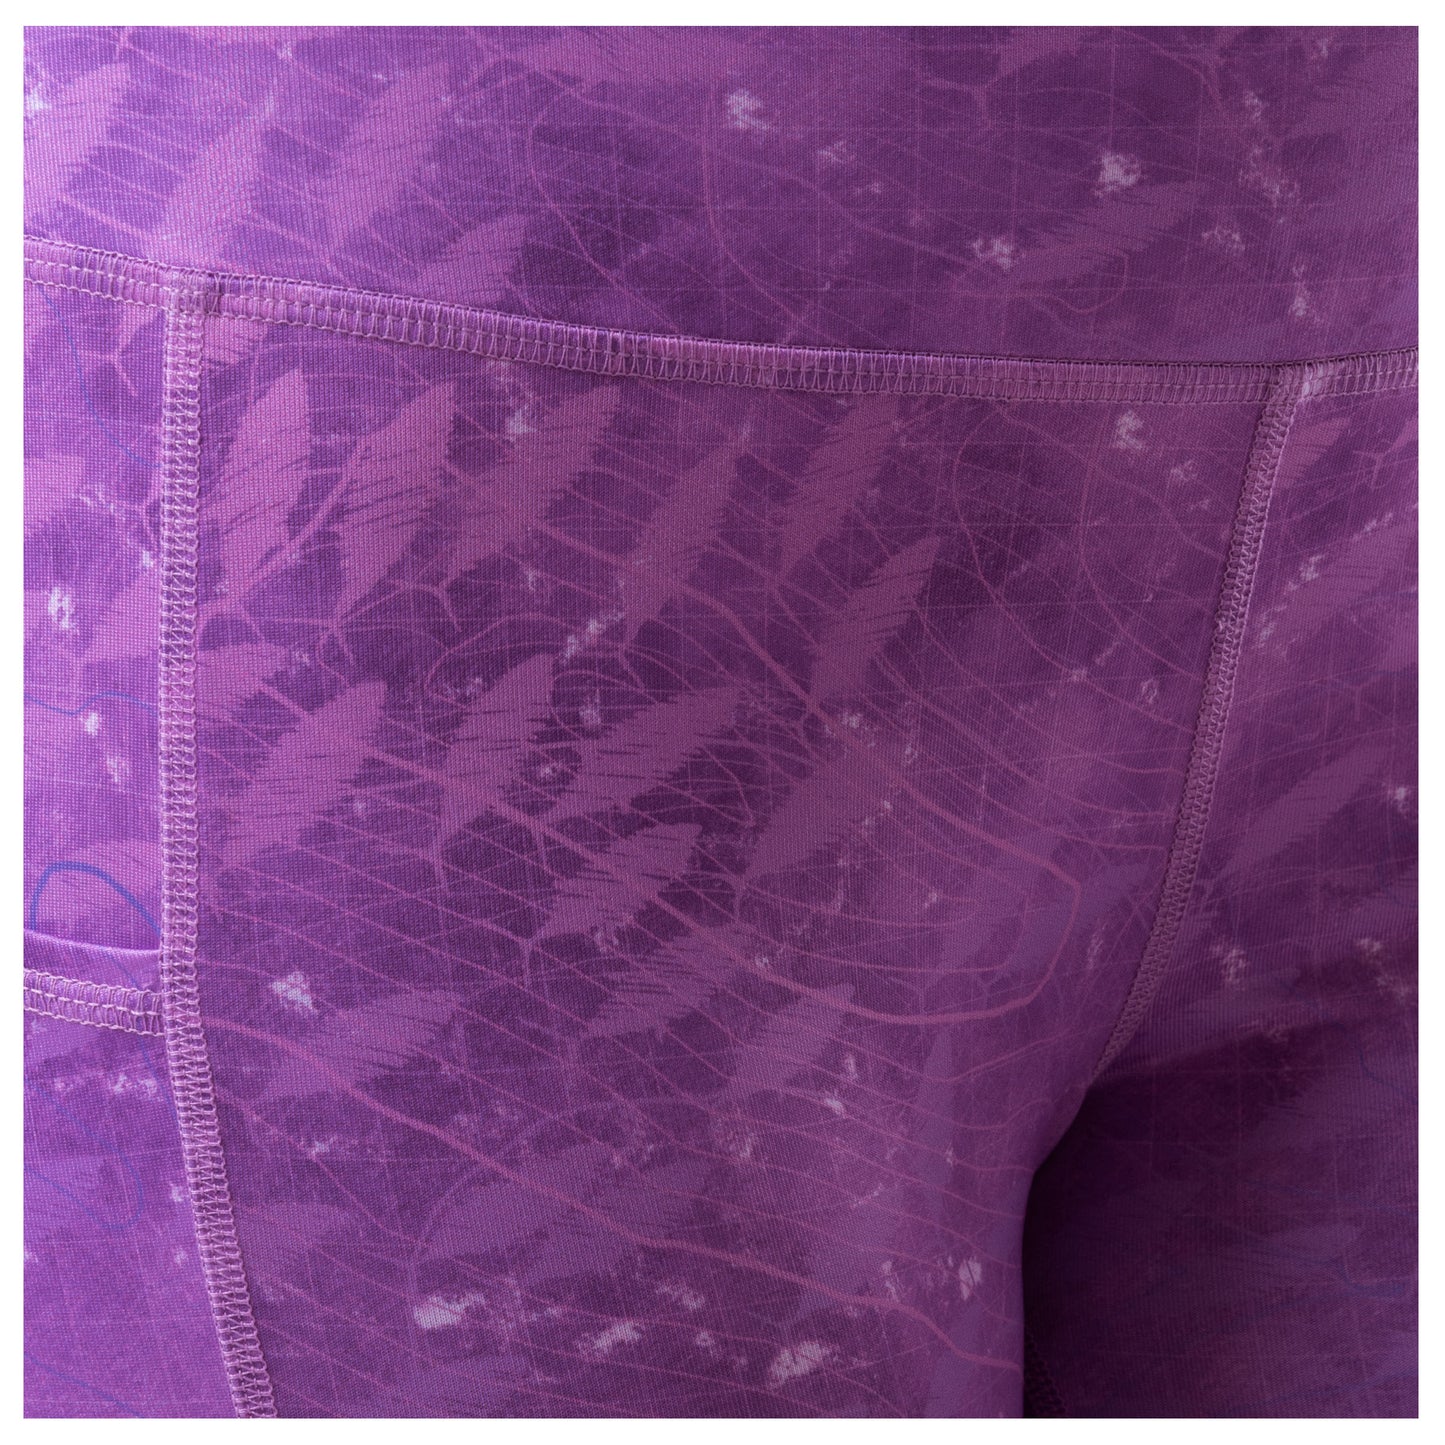 Ladies Purple Radar Yoga Pants